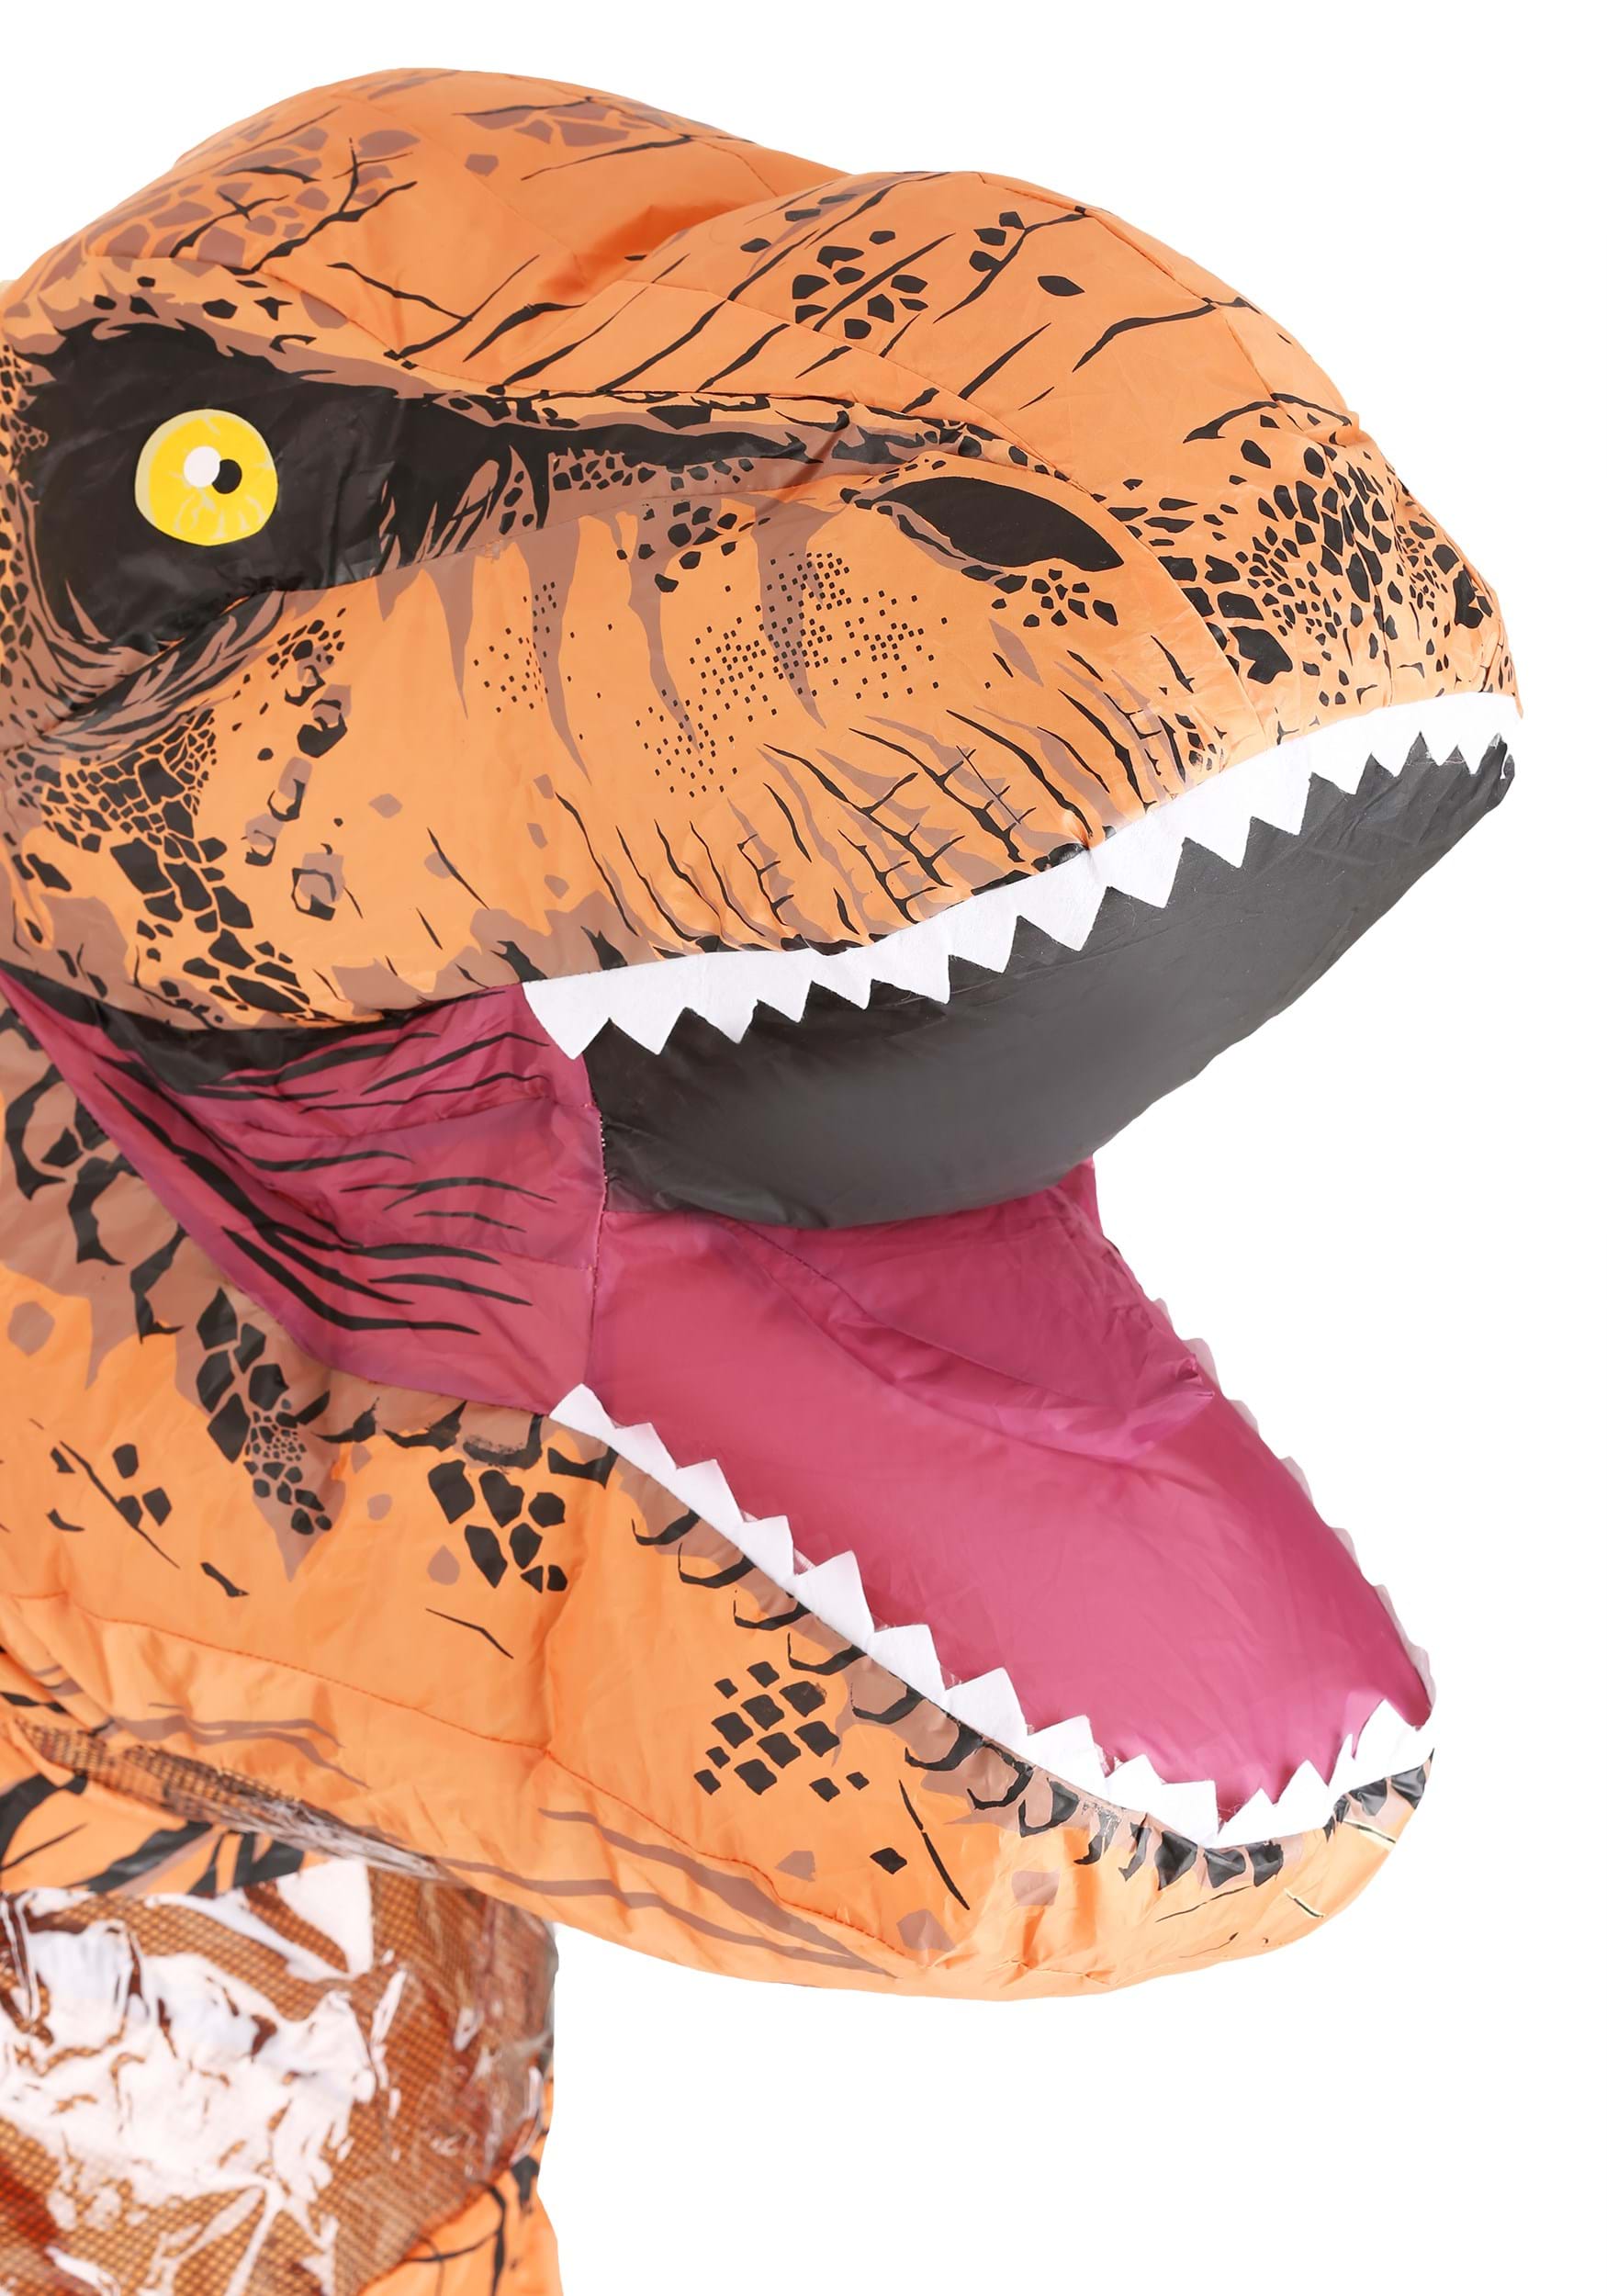  RHYTHMARTS Inflatable Costume Dinosaur Inflatable